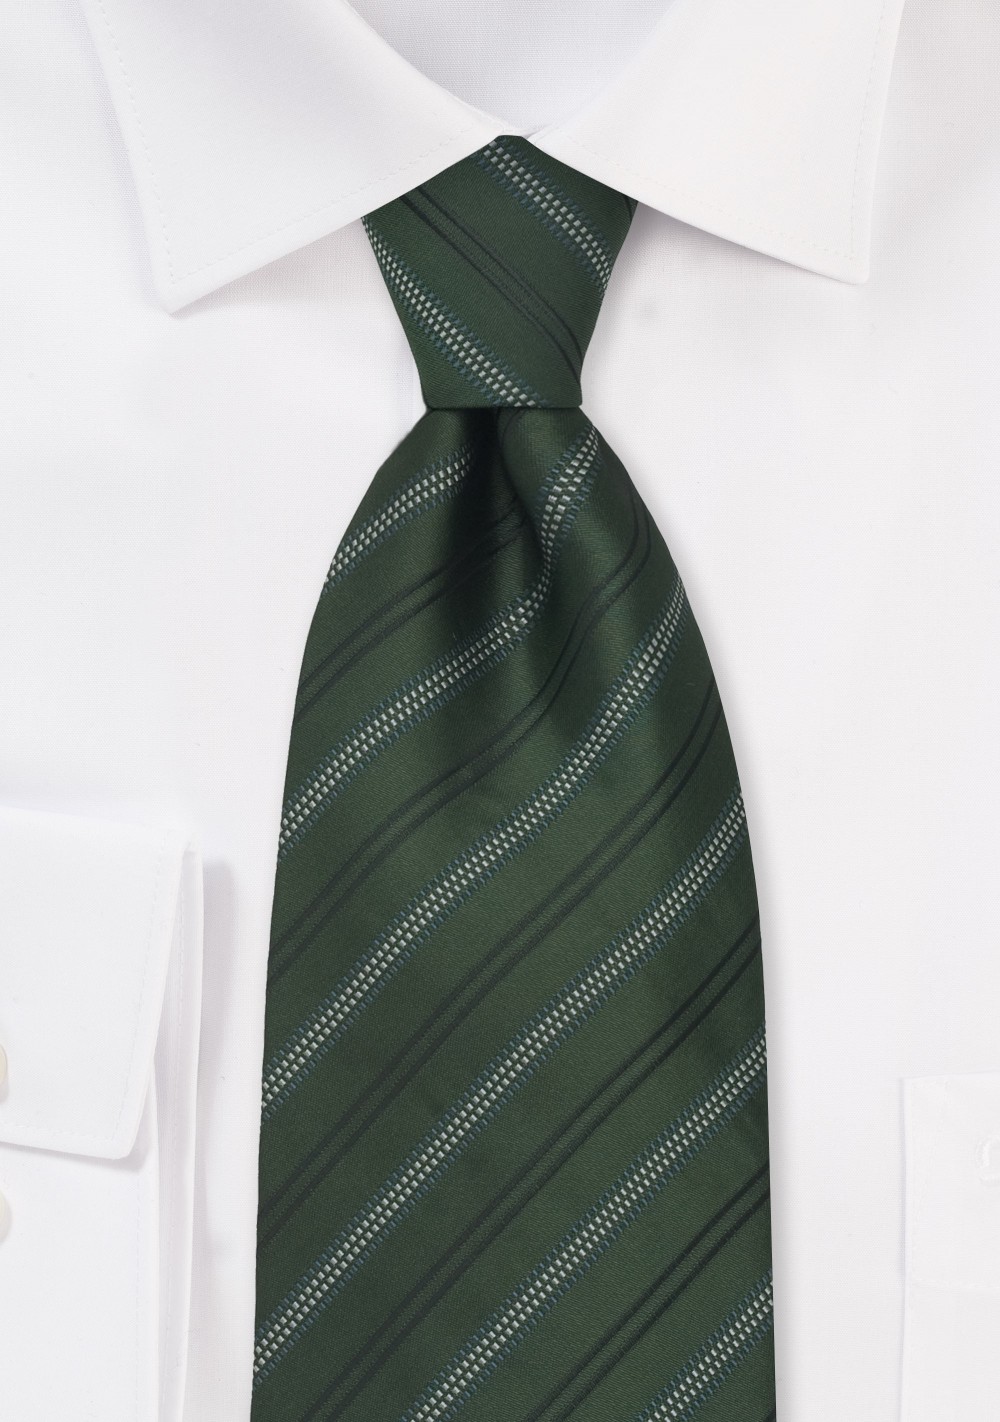 Green Neckties - Striped Tie in British Racing Green Color